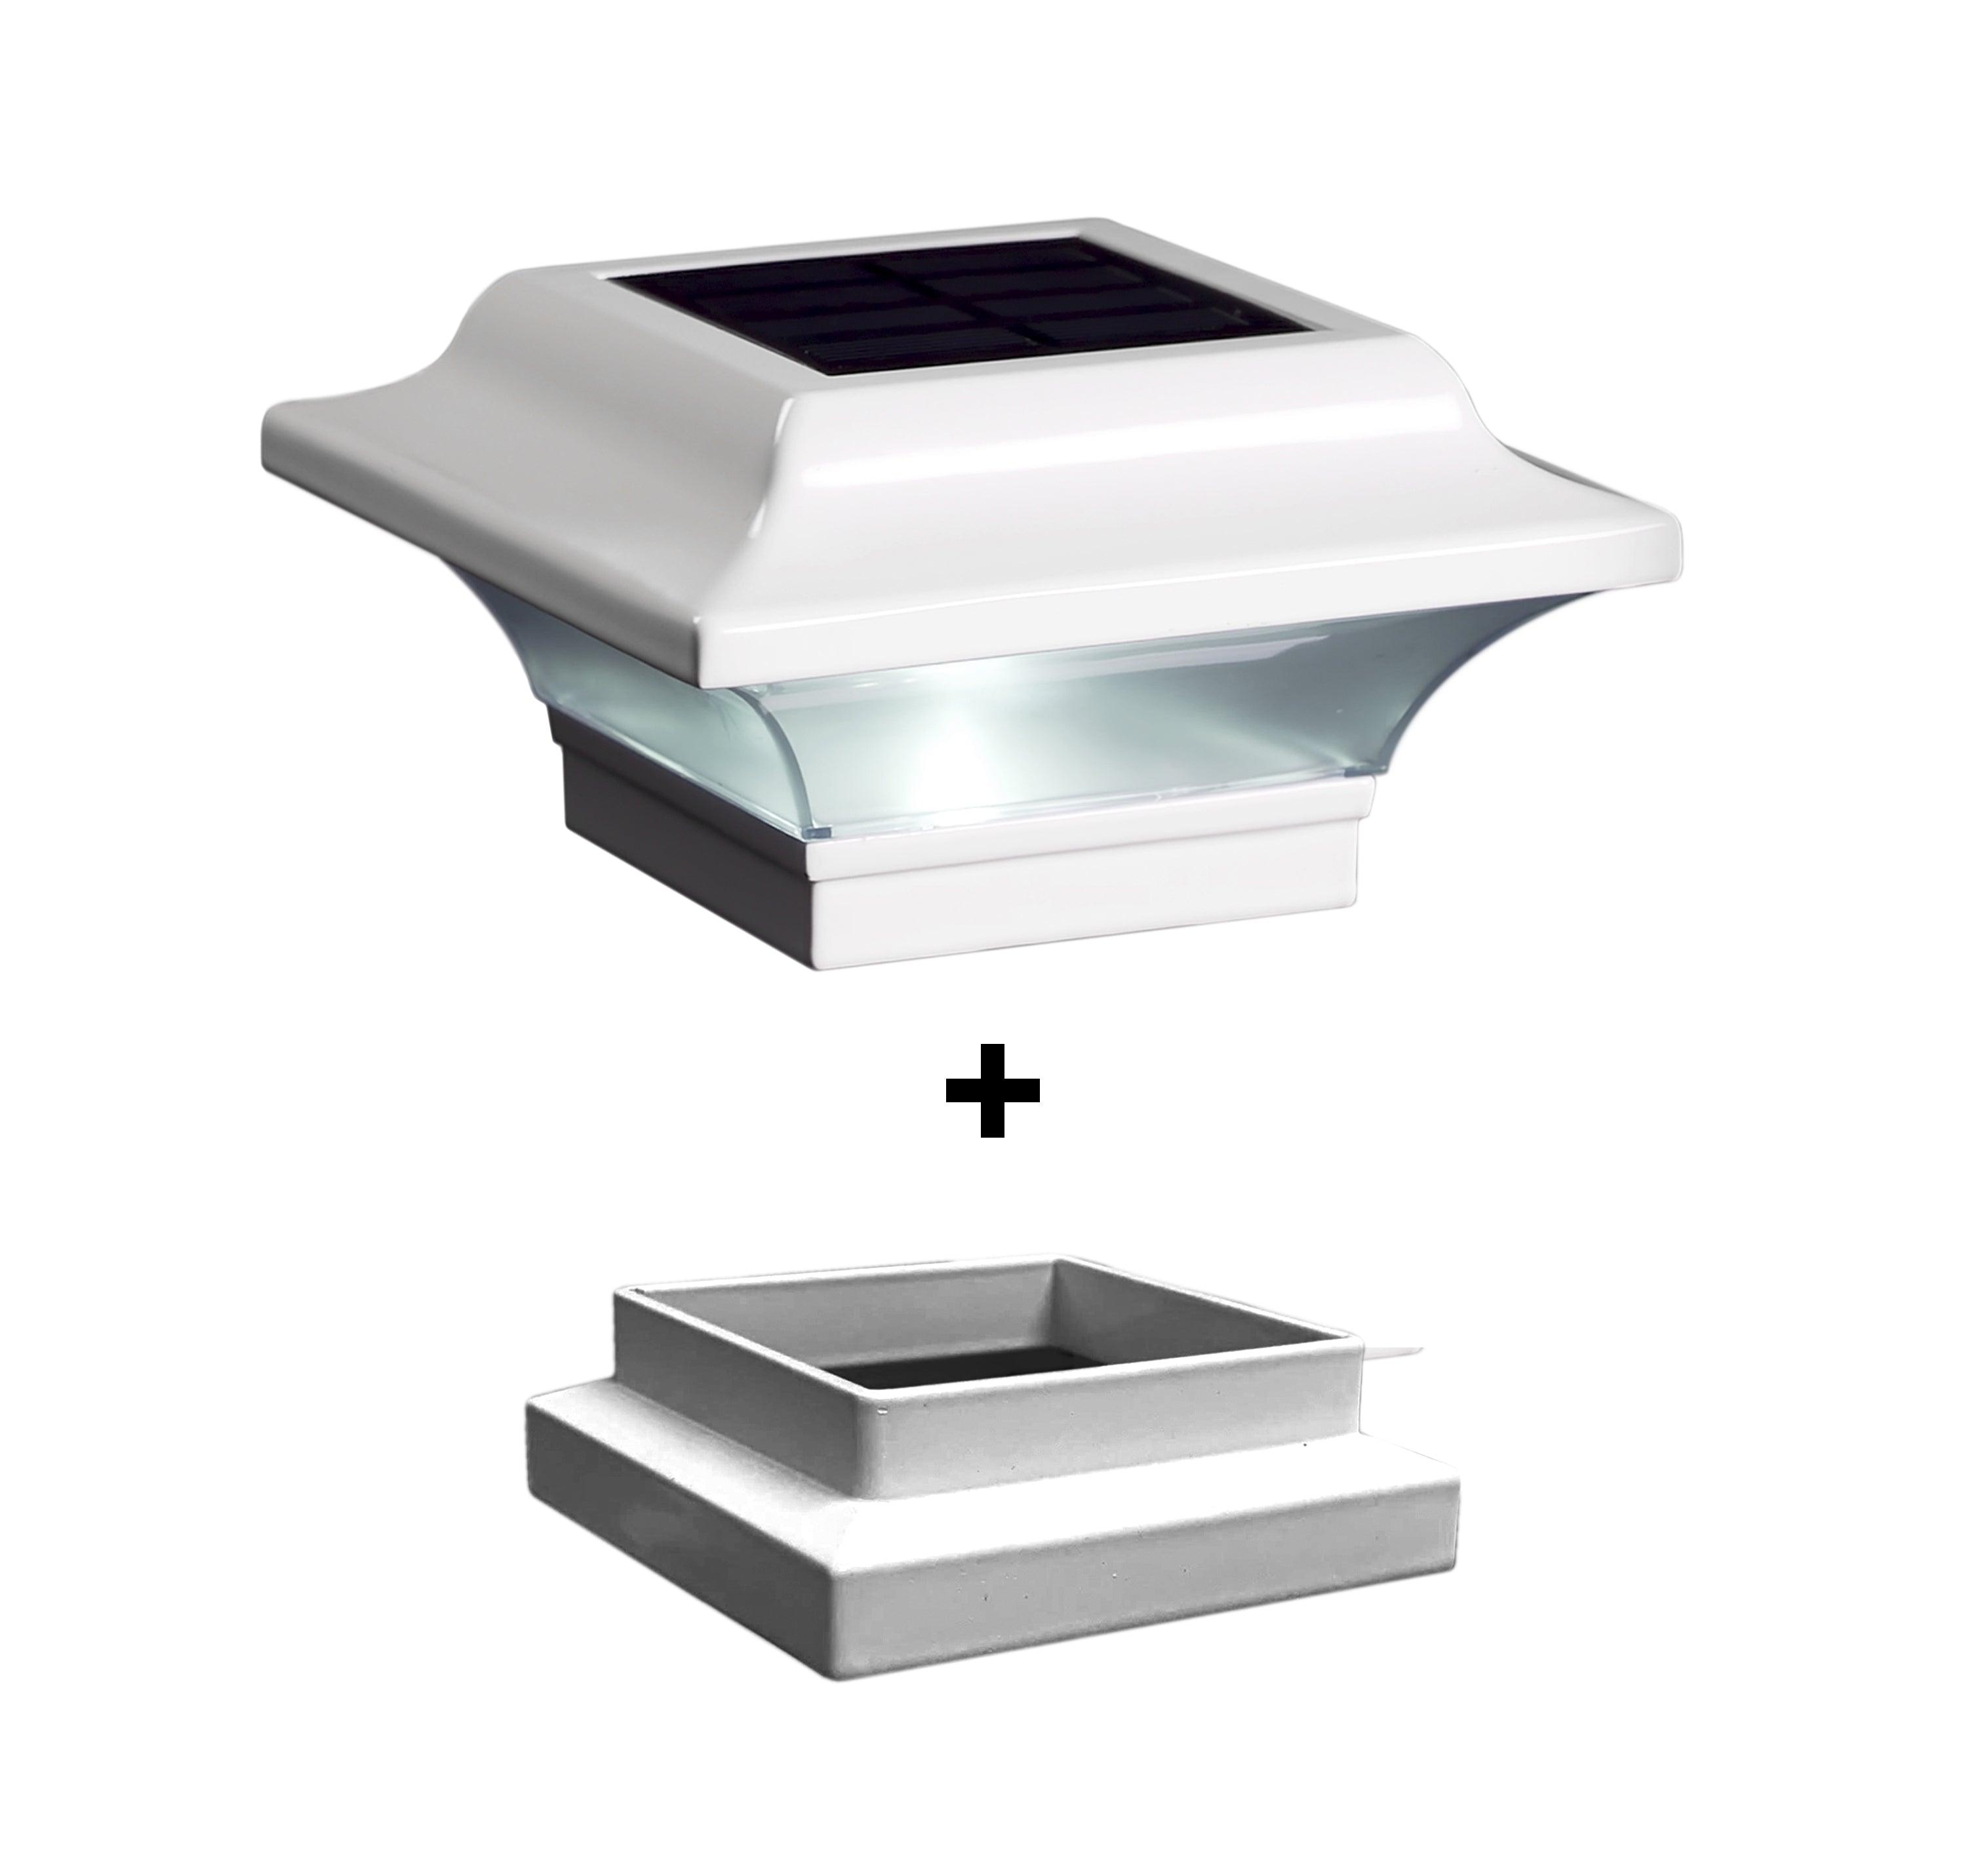 Imperial Solar Post Cap - White With 3"x3" Adaptor - Classy Caps Mfg. Inc.